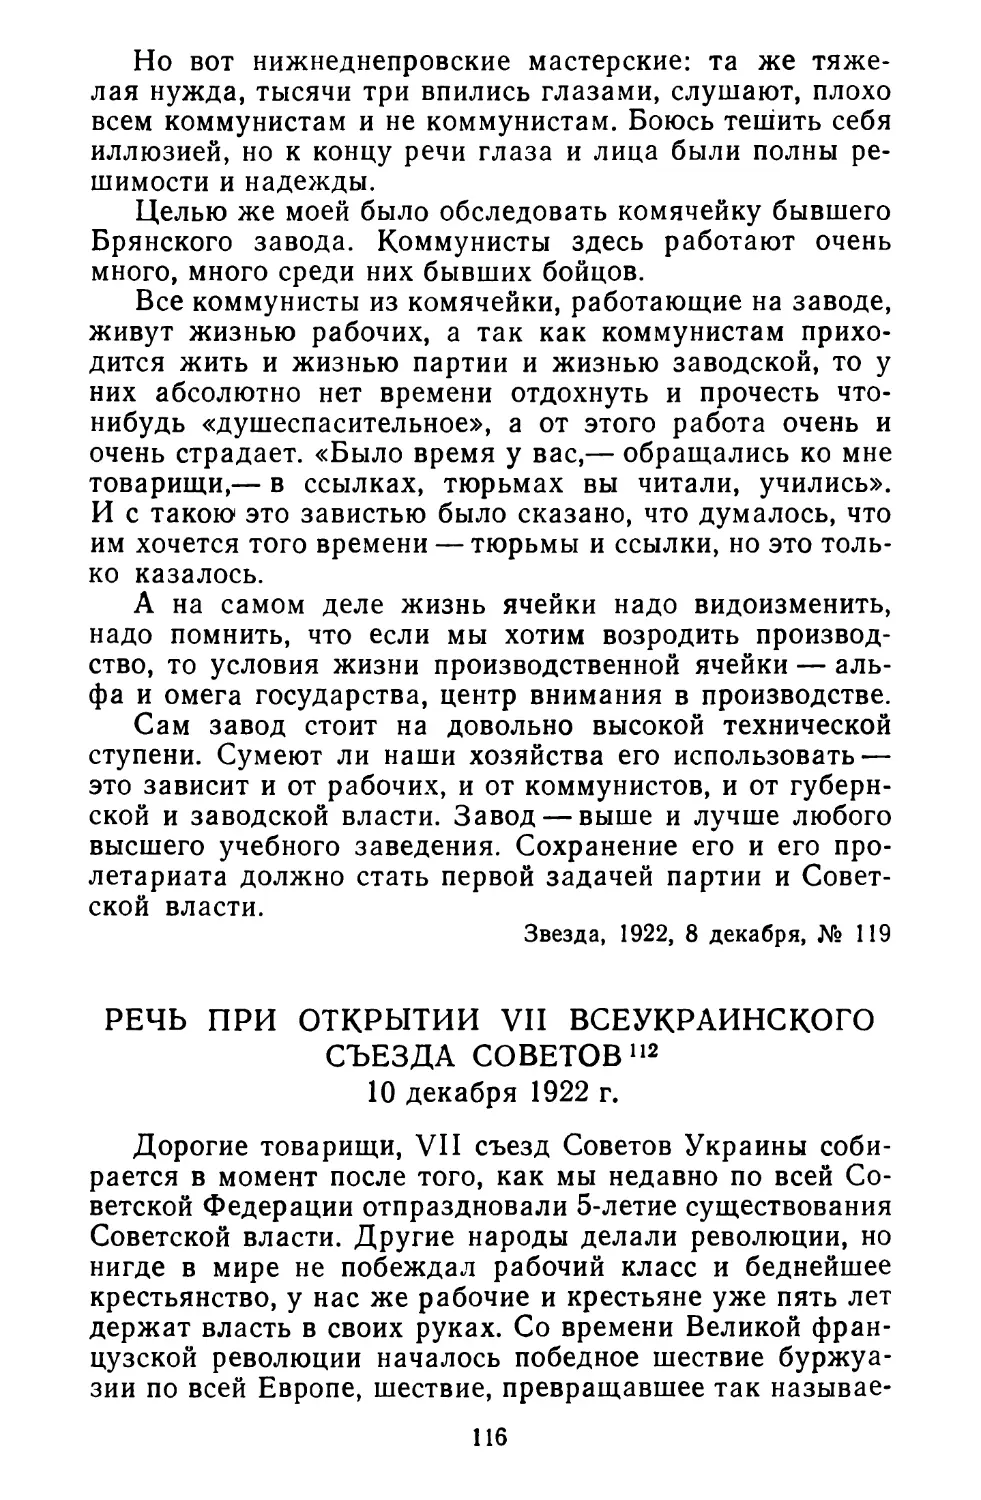 Речь при открытии VII Всеукраинского съезда Советов. 10 декабря 1922 г.